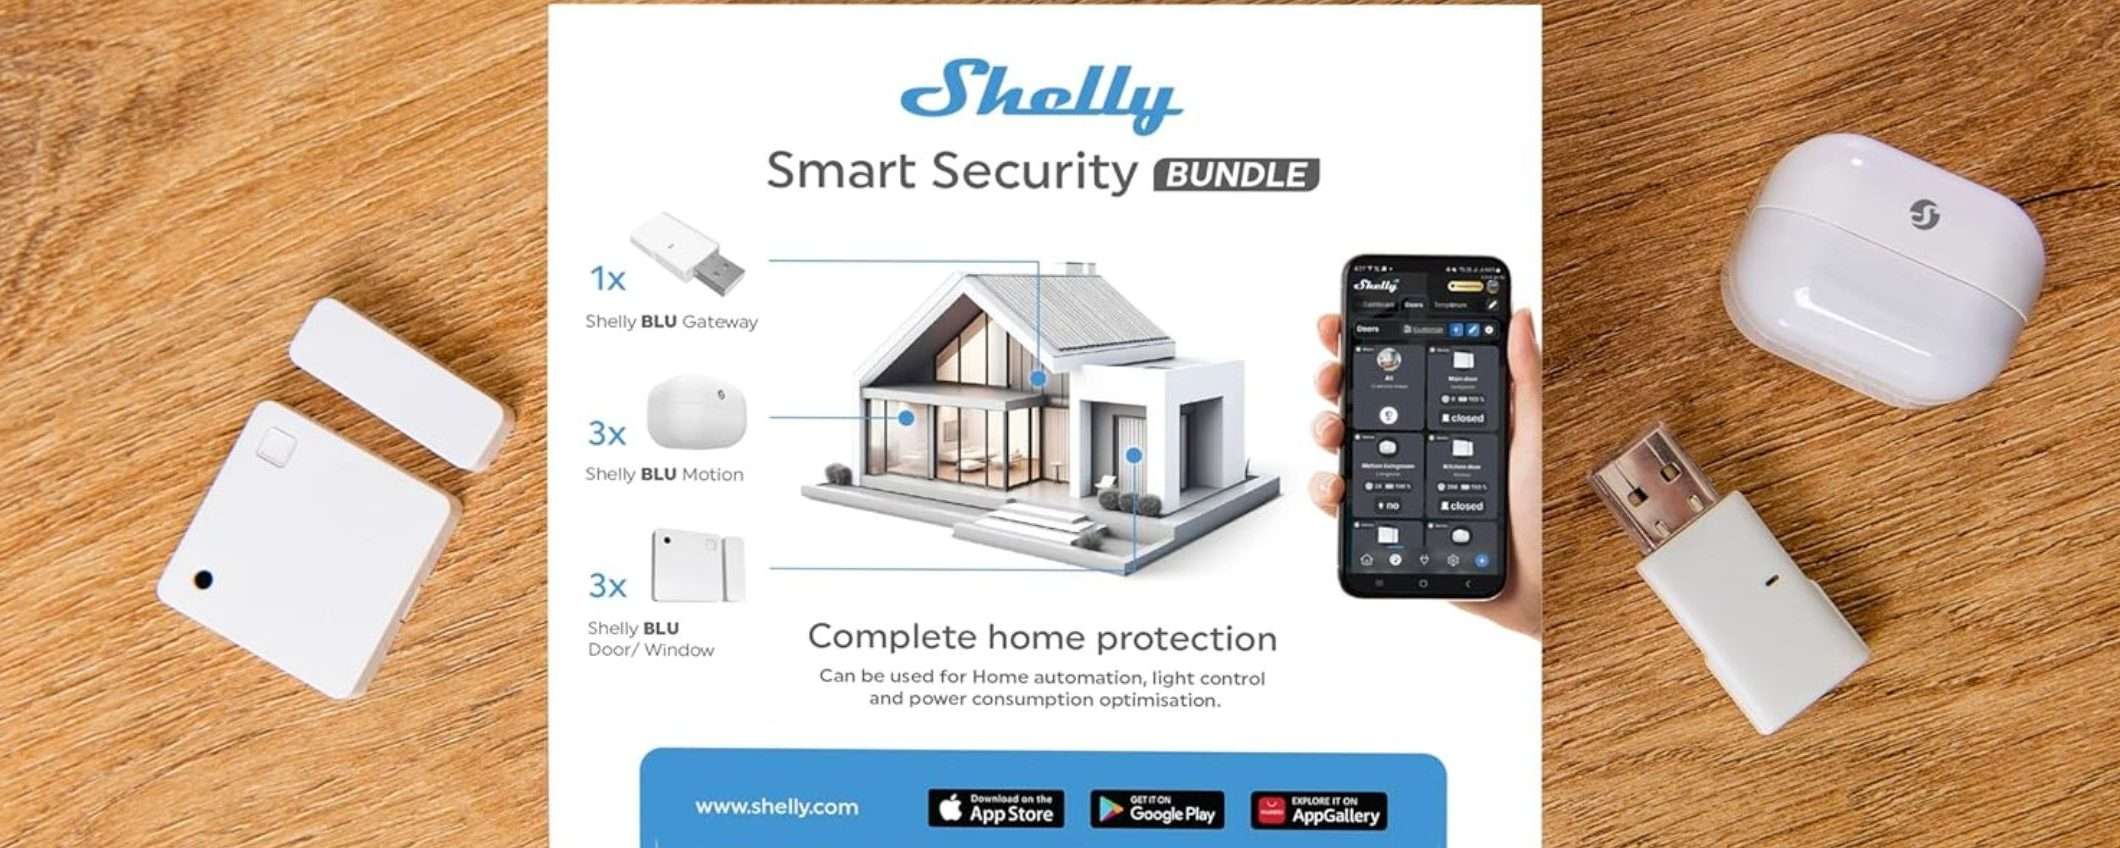 Casa BLINDATA con questo kit SMART per la sicurezza di Shelly in SCONTO (-17%)